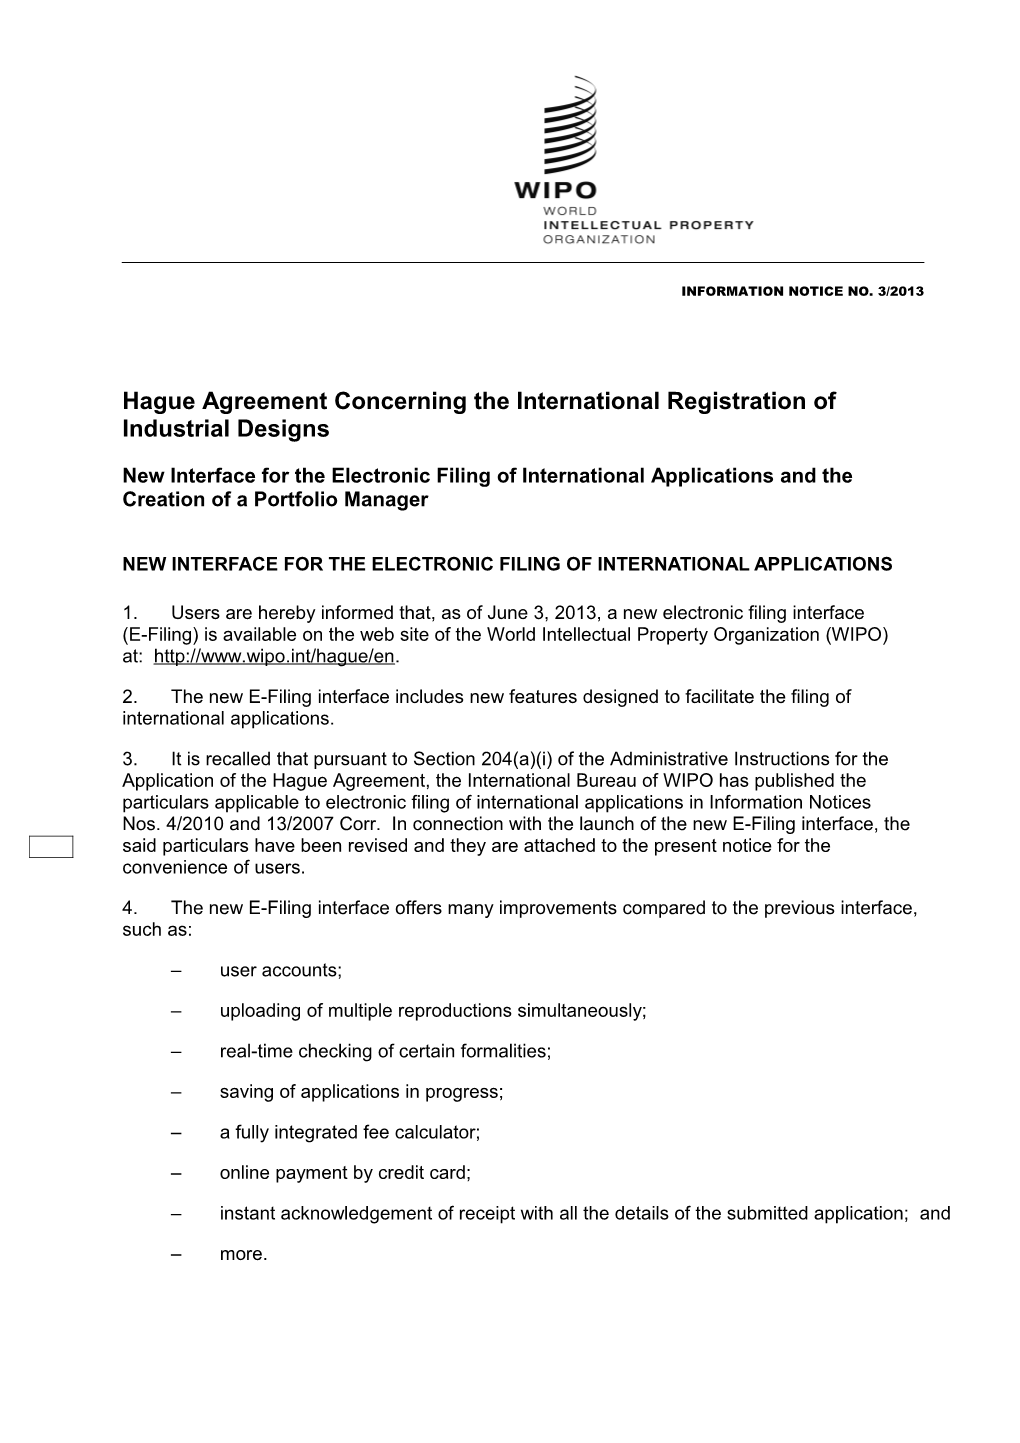 Hague Information Notice No. 6/2011